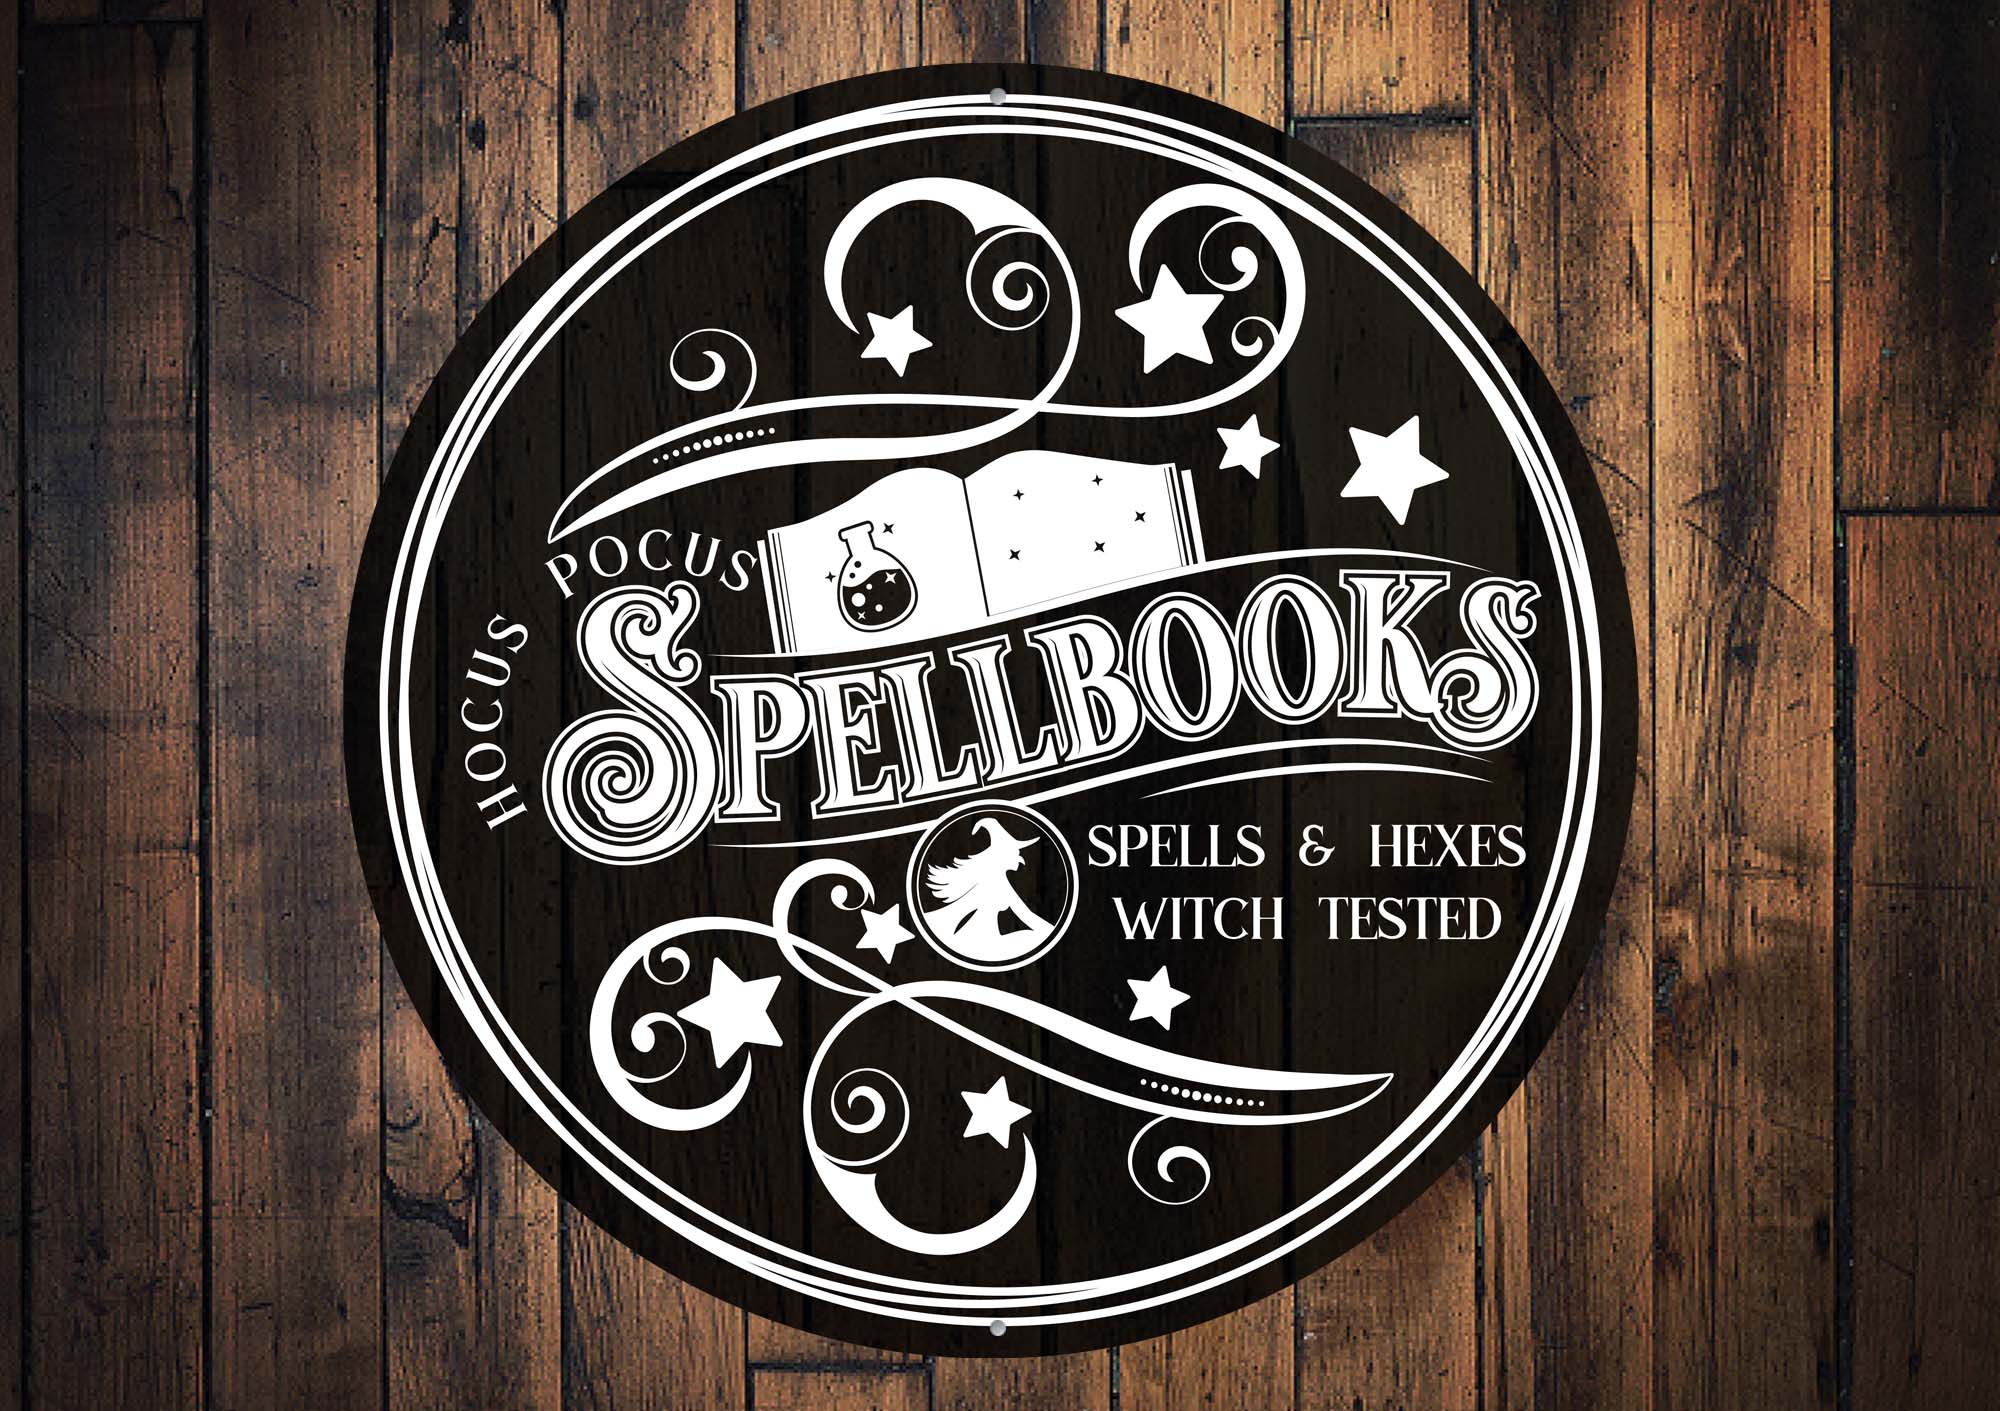 Spellbooks Spells And Hexes Halloween Sign